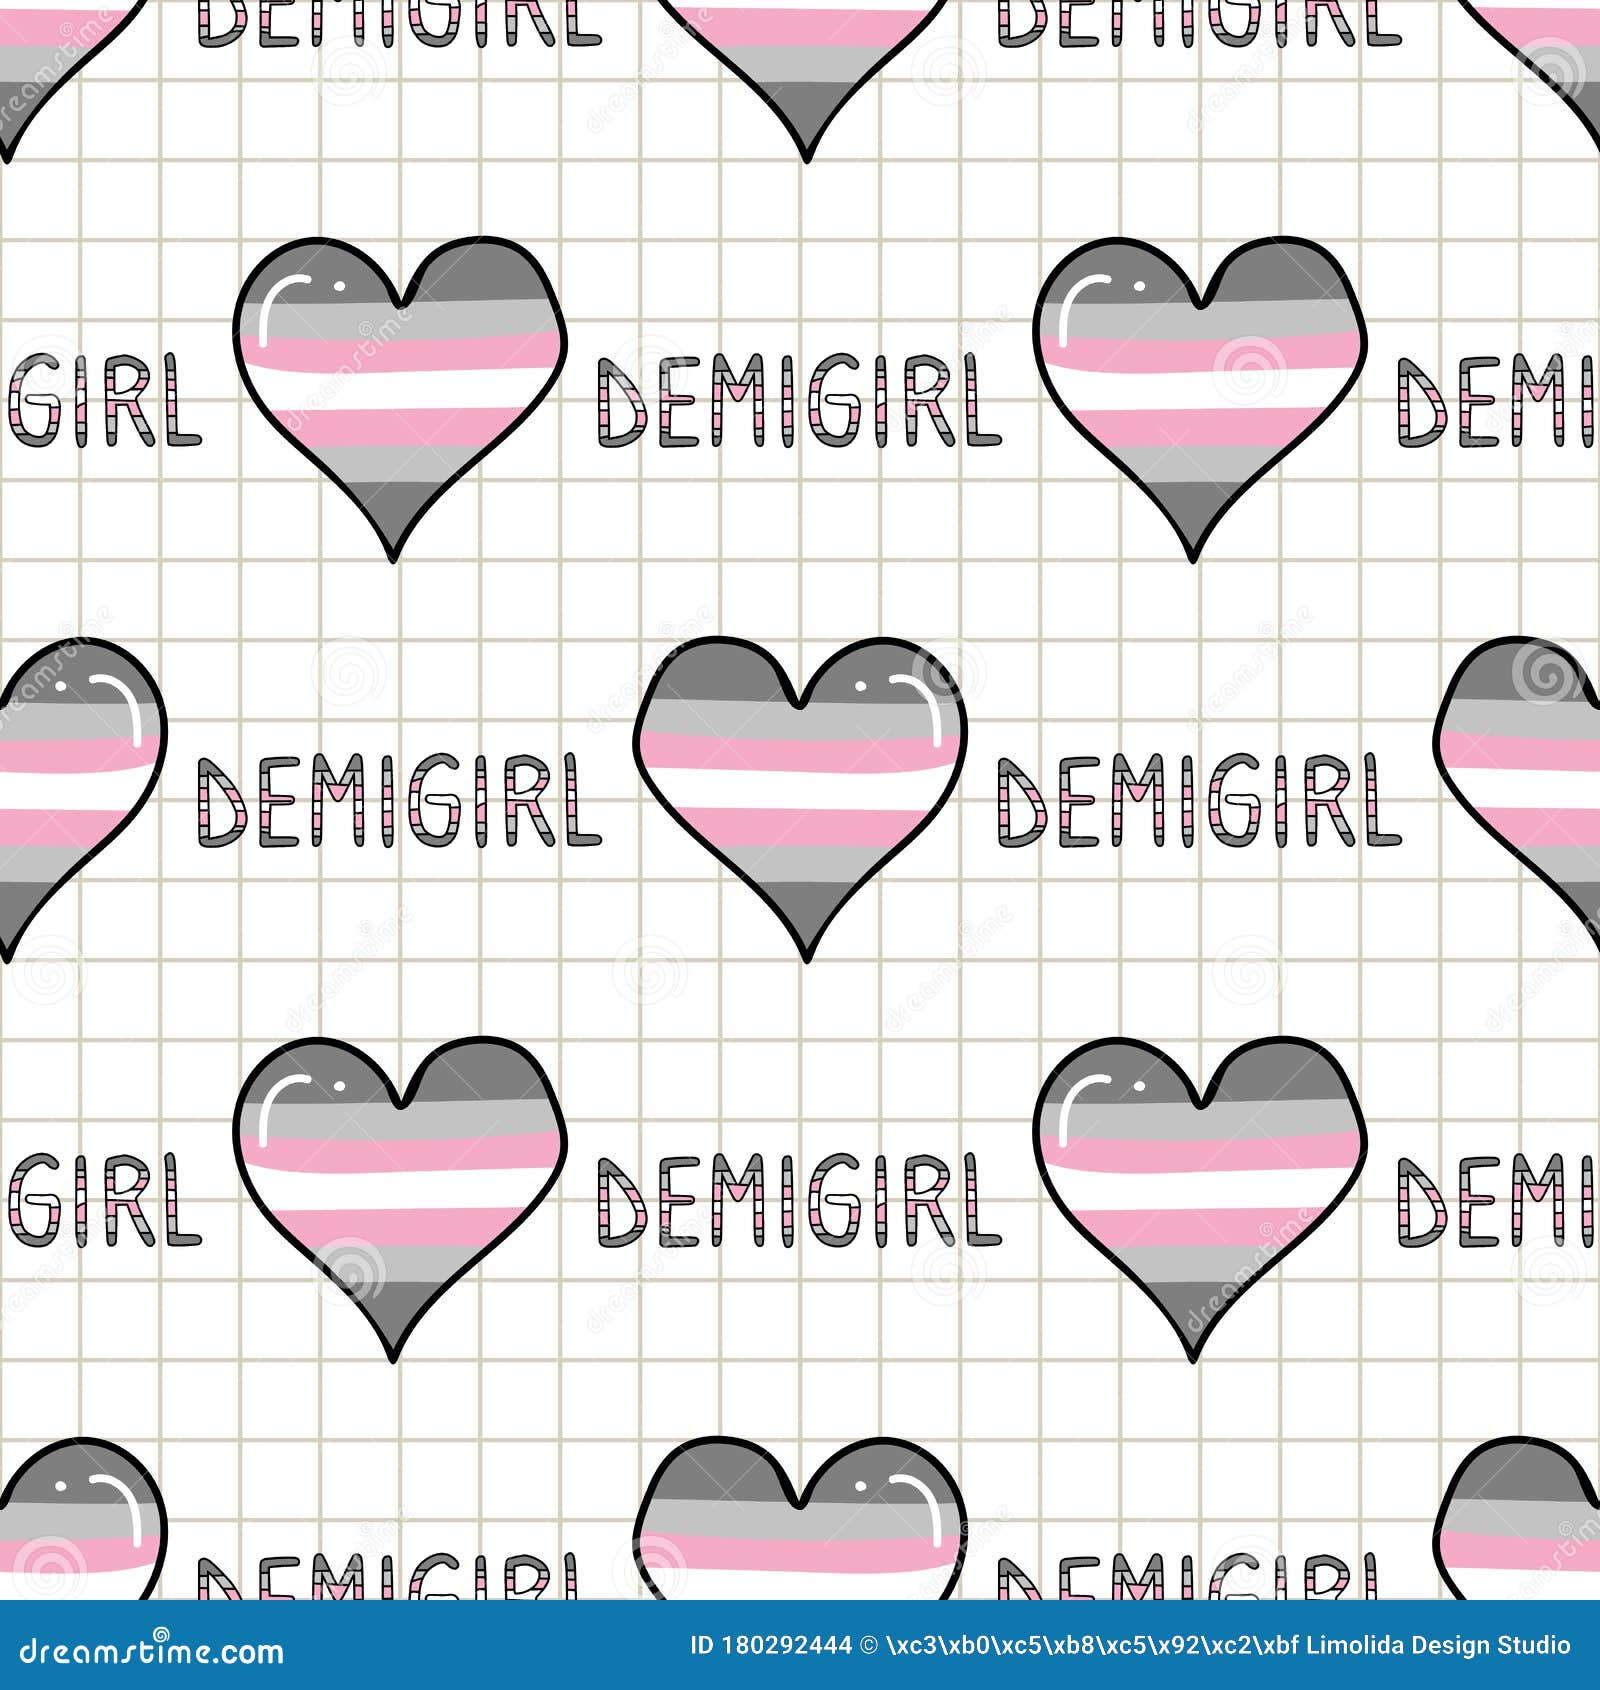 Demigirl wallpaper by SerenaSchwarz  Download on ZEDGE  ac97